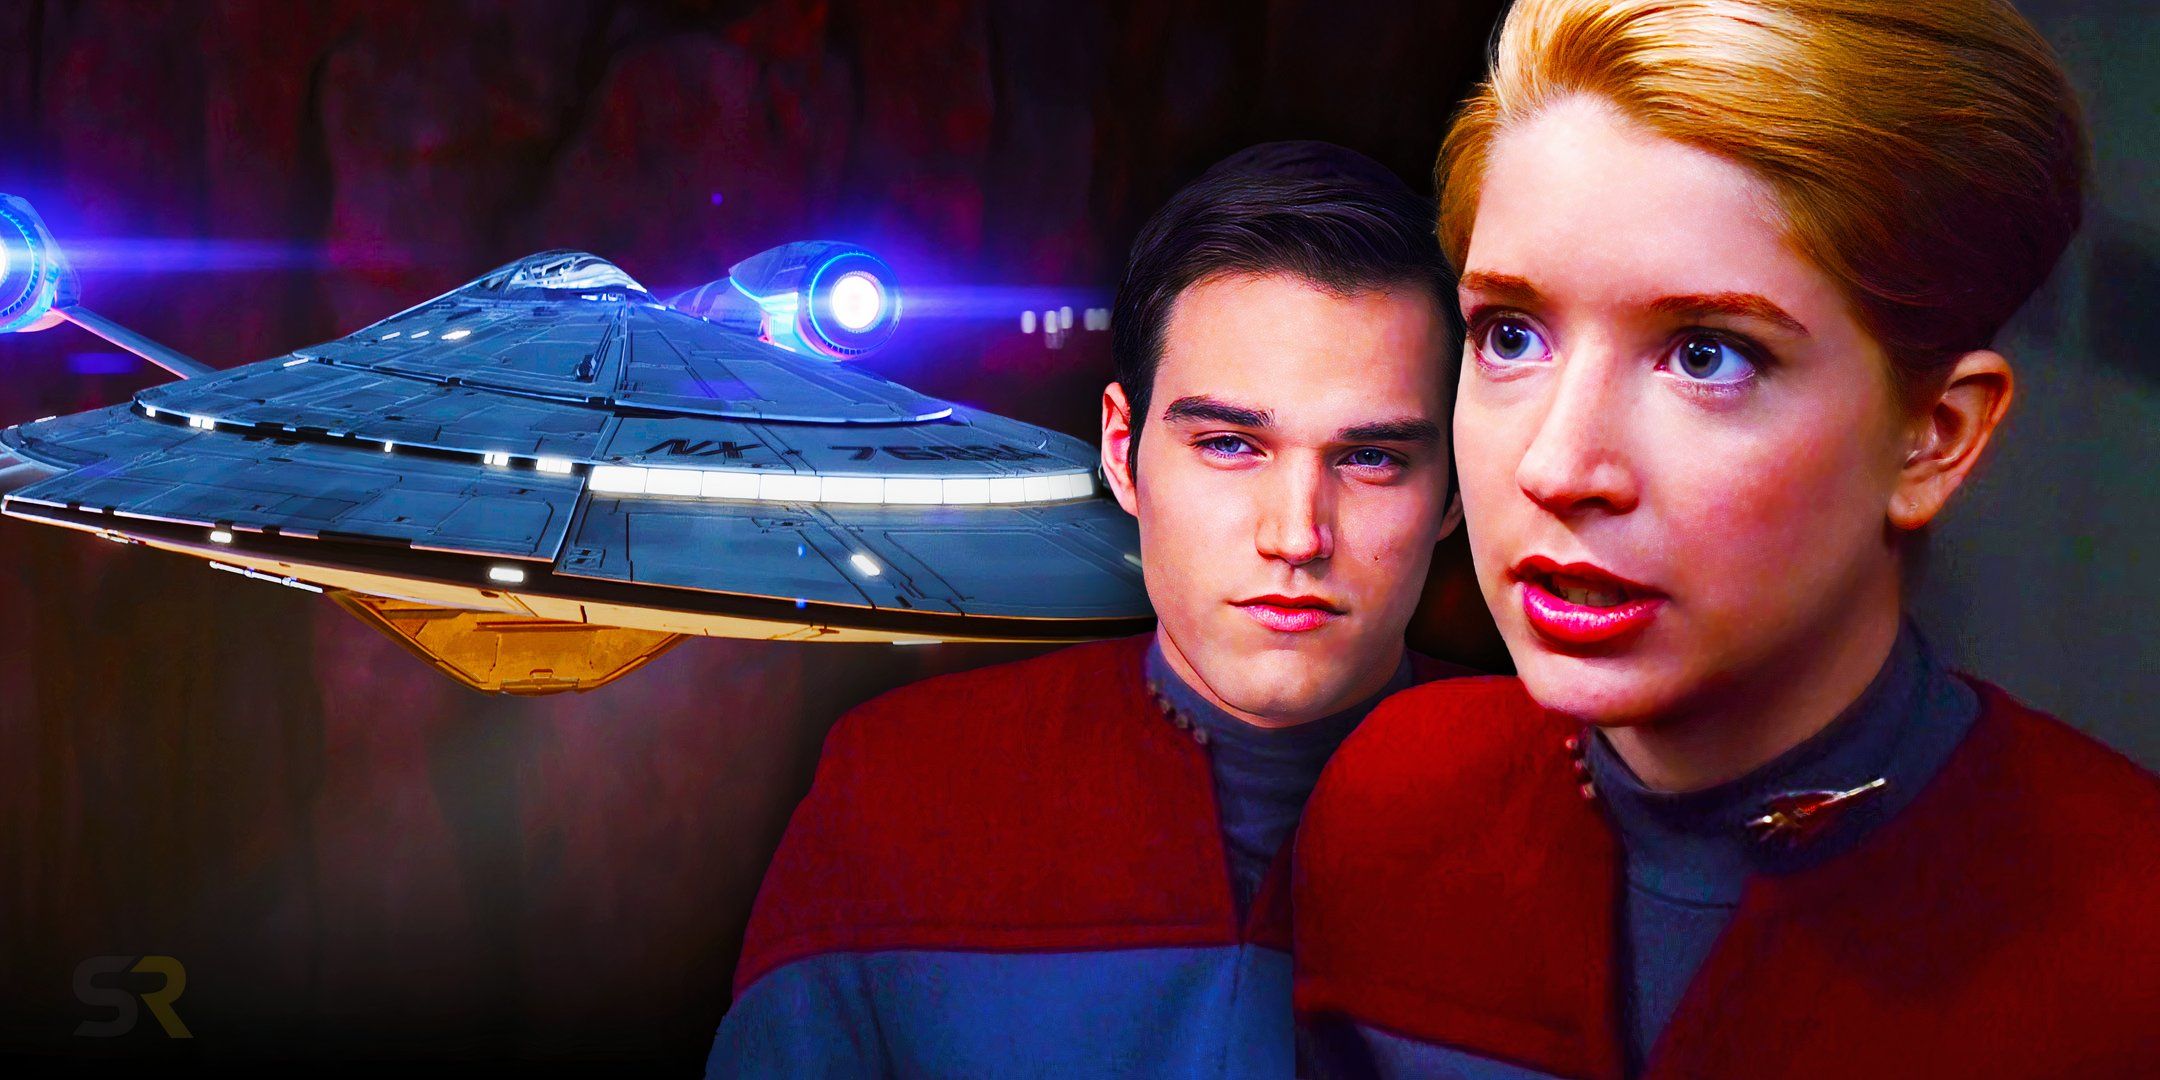 La nueva tripulación de la nave espacial de Star Trek no repetirá la tragedia del Escuadrón Rojo de DS9